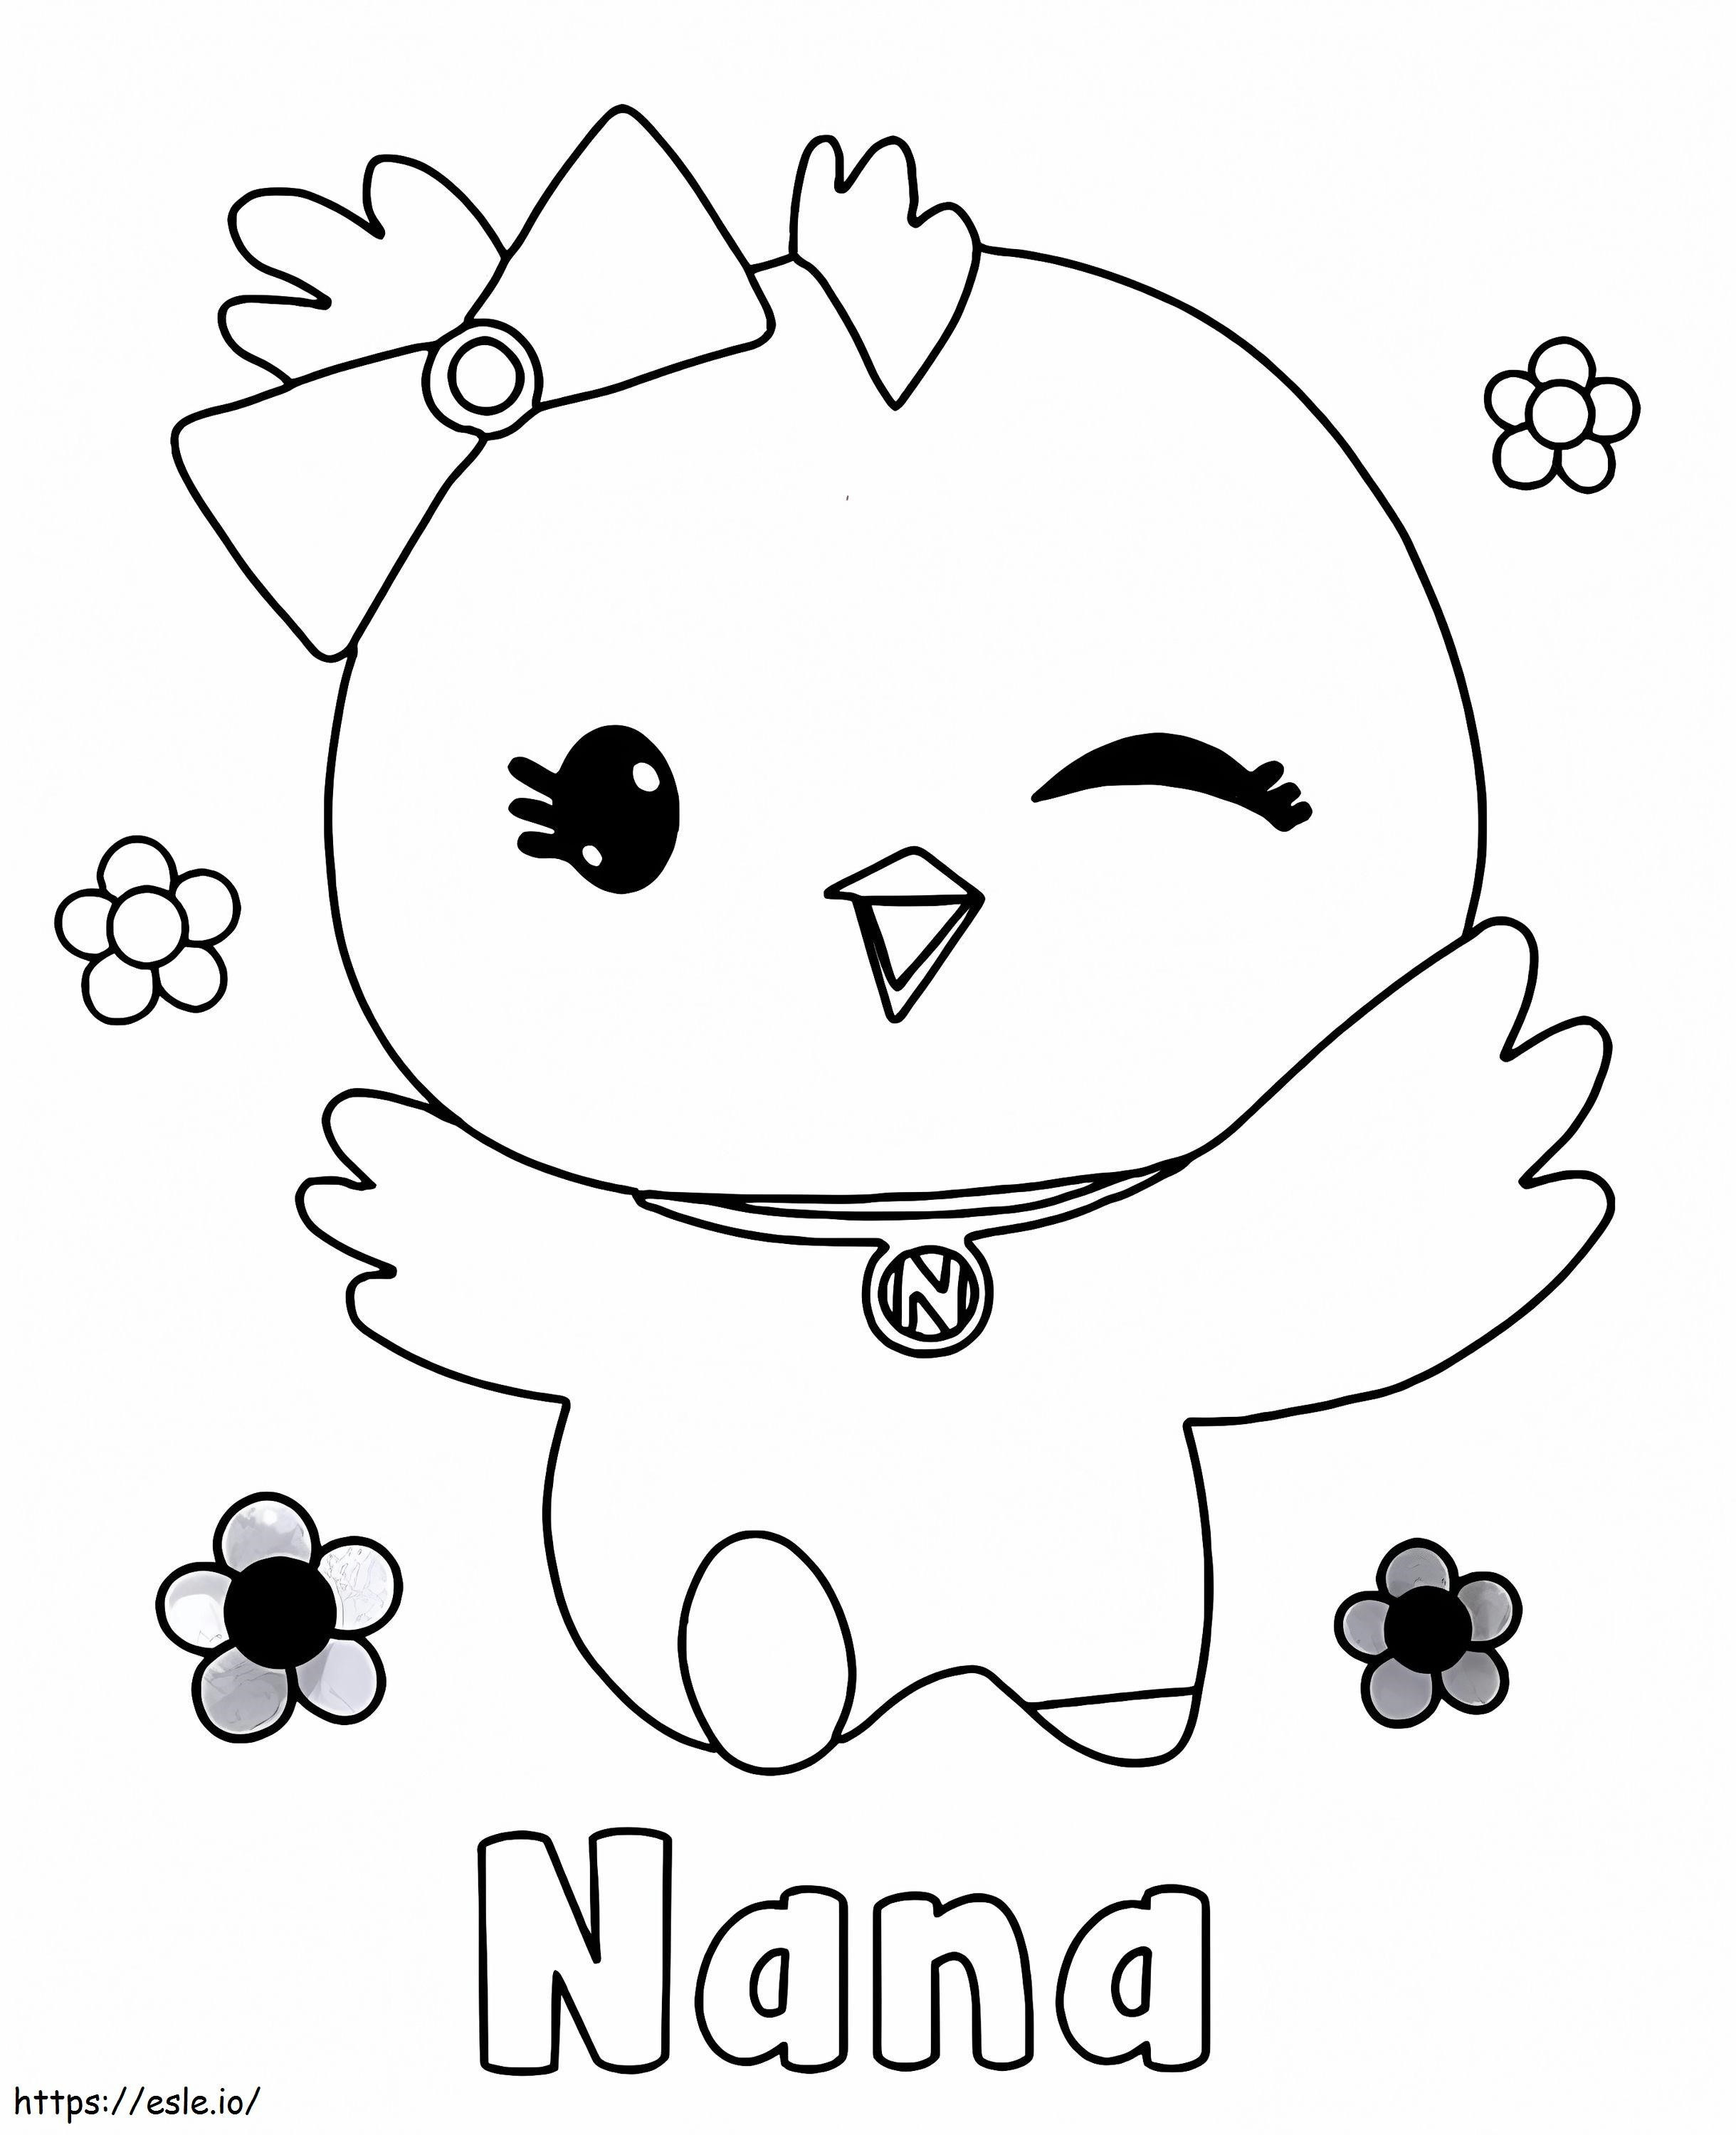 Cute Nana coloring page